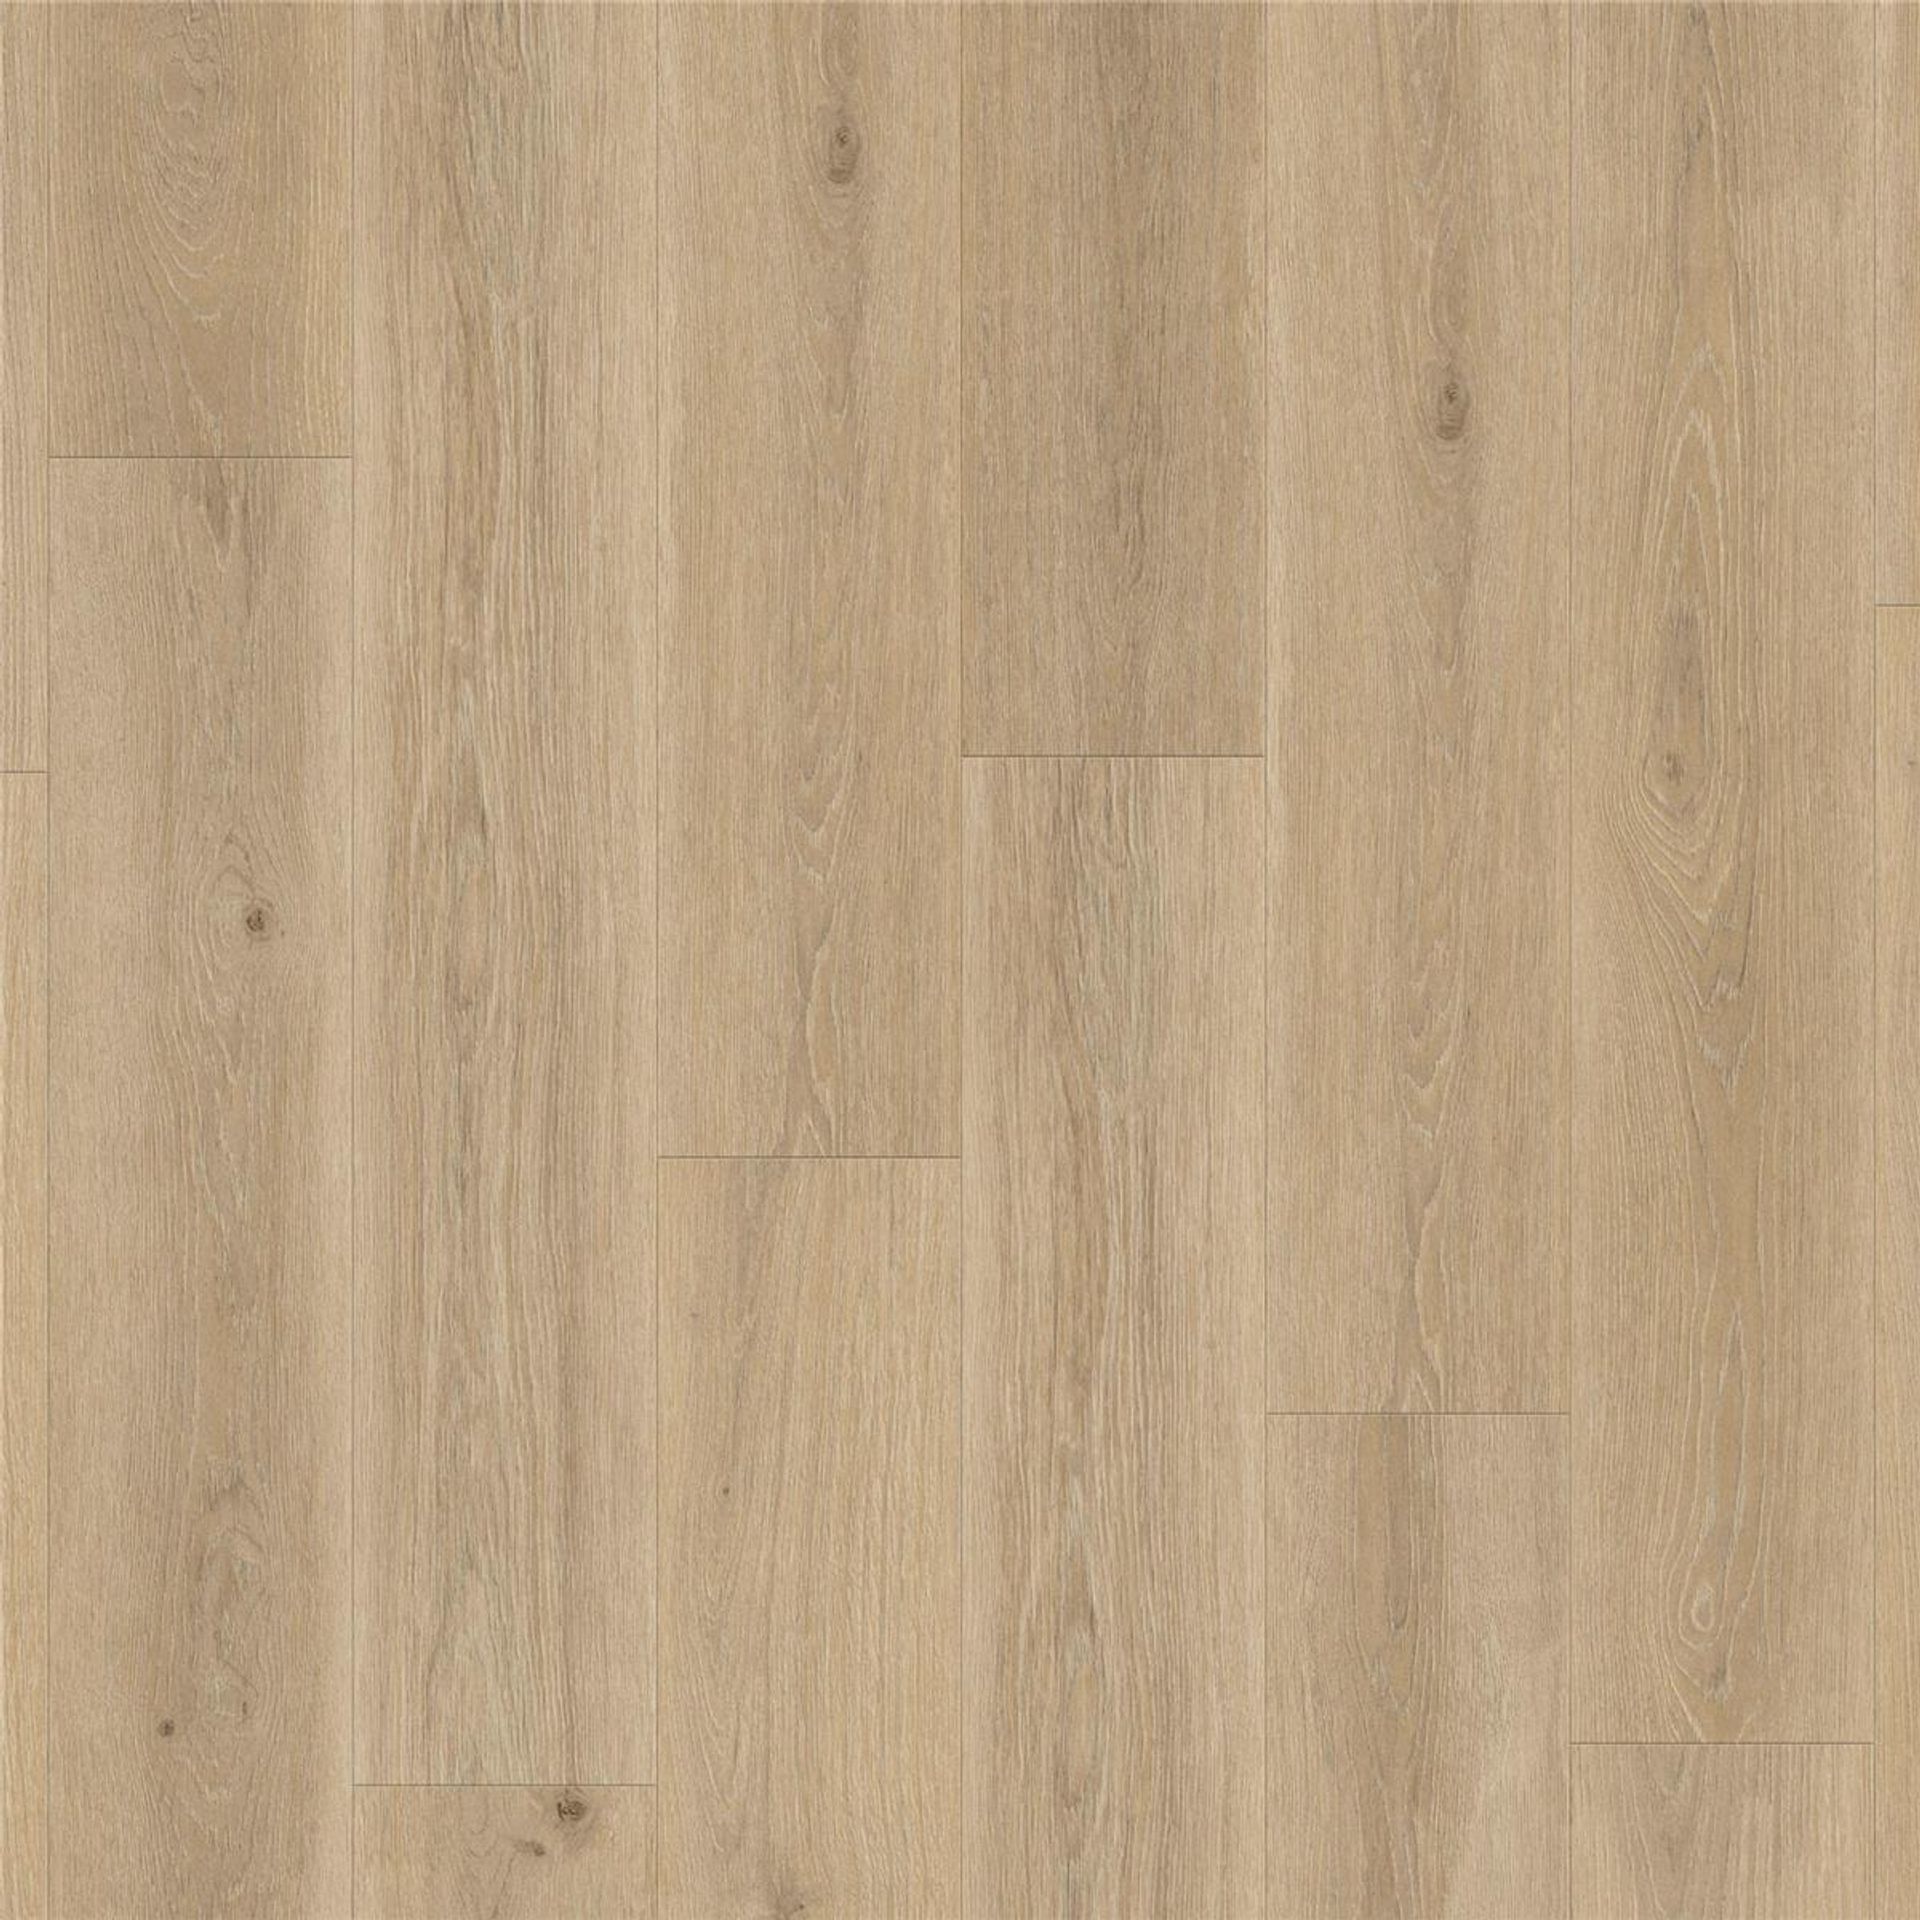 Designboden AUTHENTICS-Highland Oak-Golden Planke 121,1 cm x 19,05 cm - Nutzschichtdicke 0,30 mm